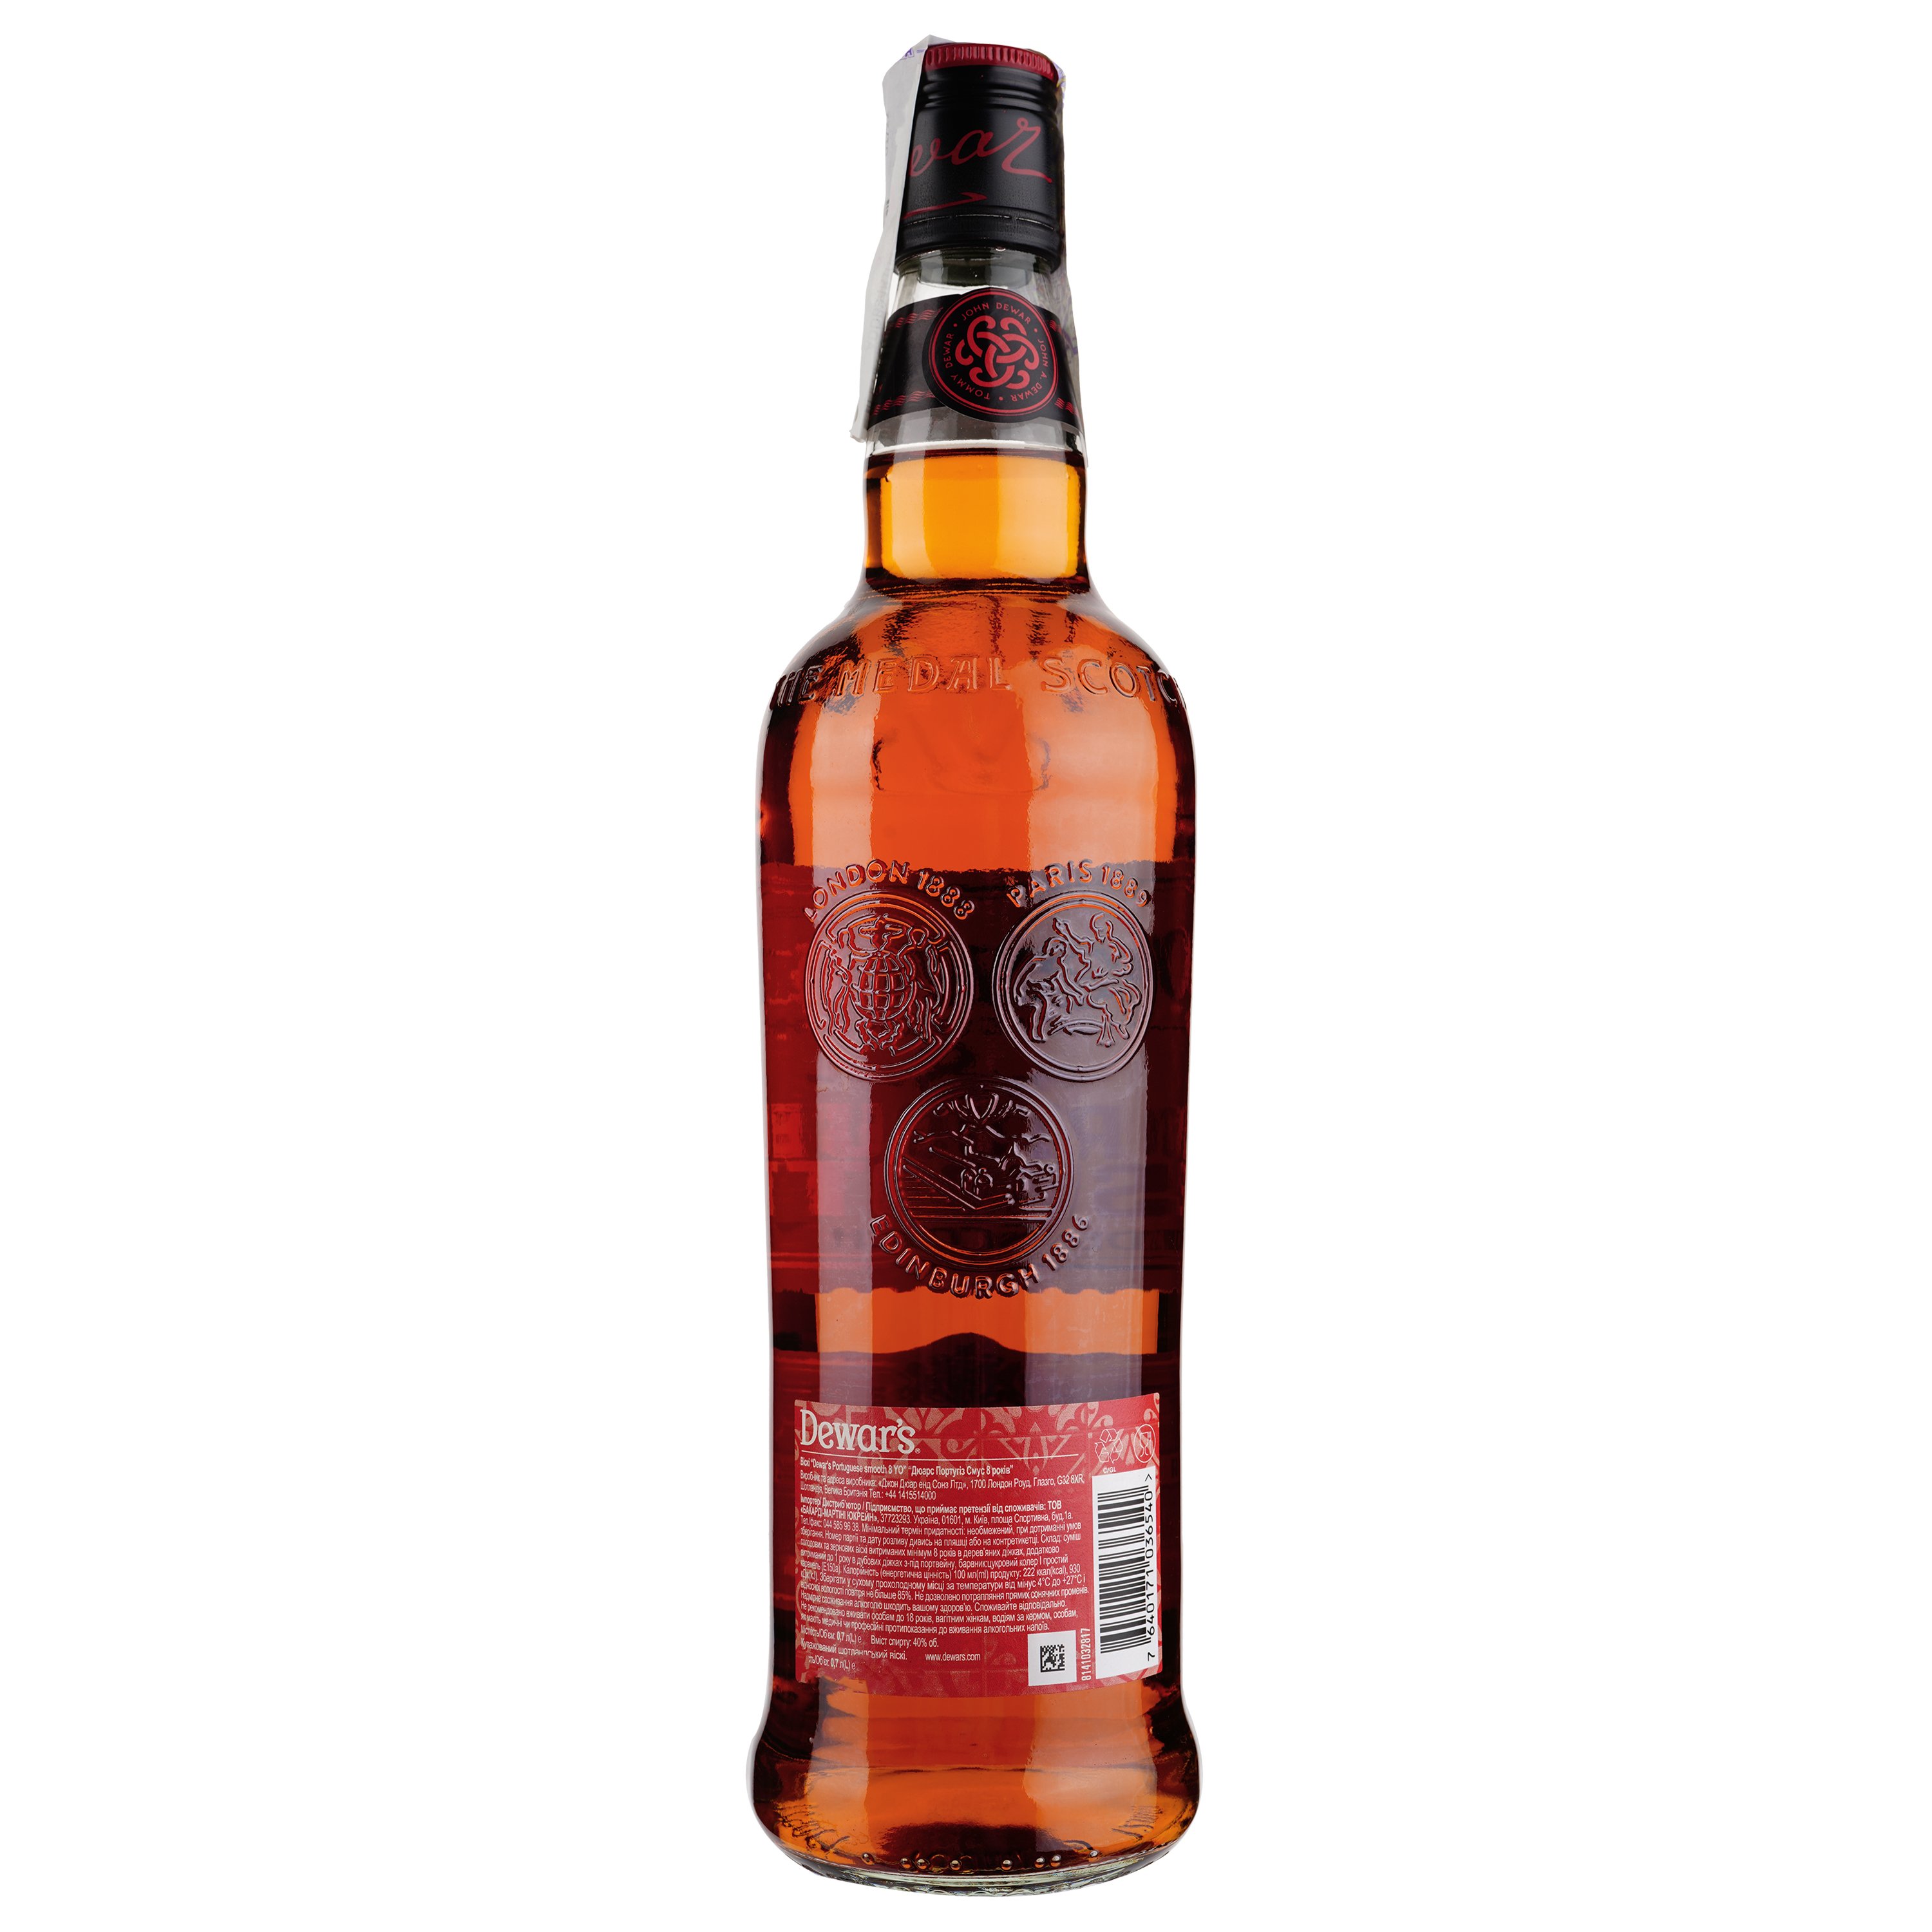 Віскі Dewar's Portuguese Smooth 8 YO Blended Scotch Whisky, 40%, 0,7 л (878771) - фото 2